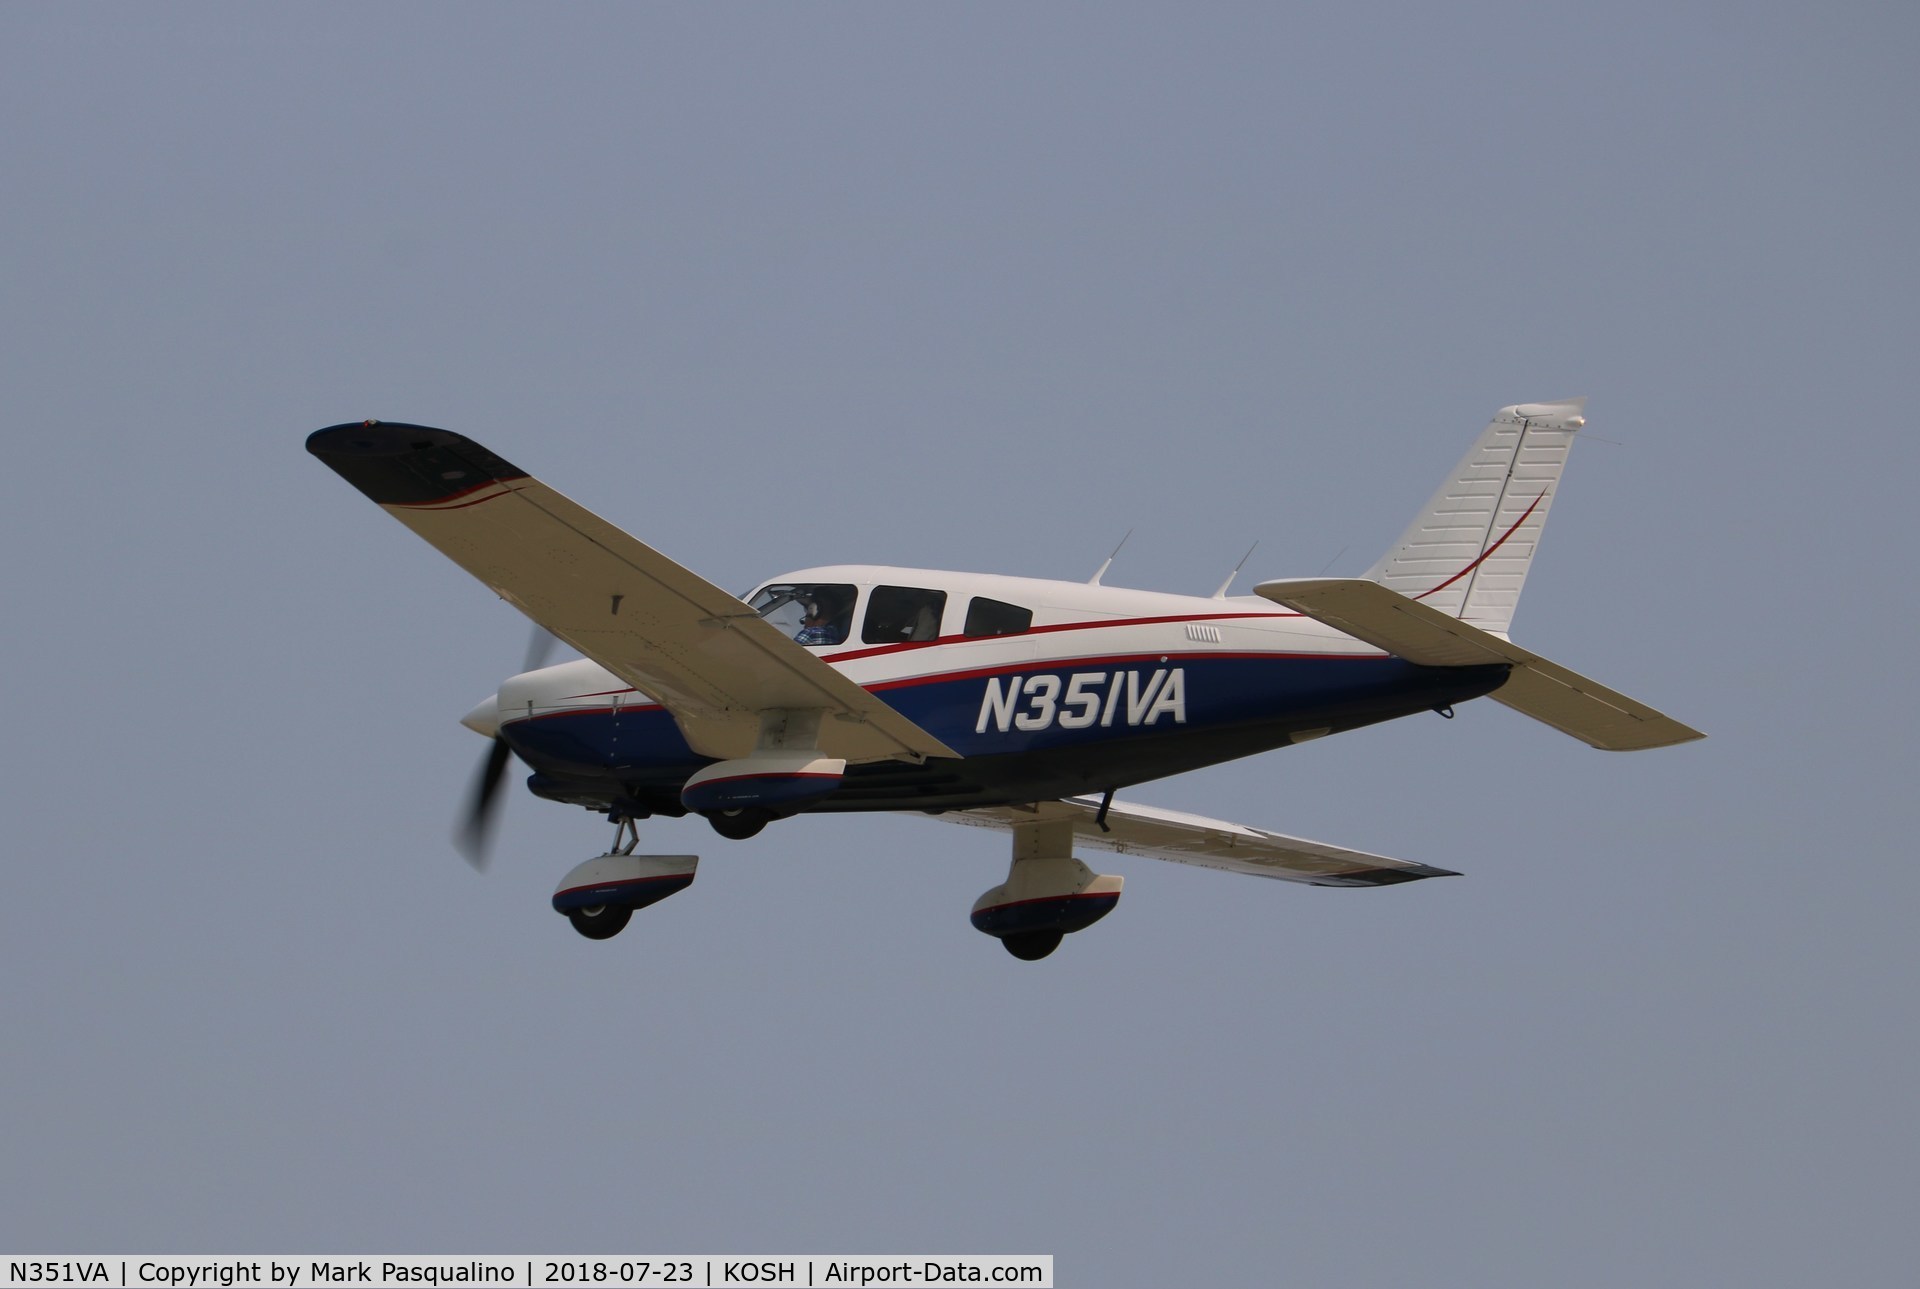 N351VA, 1981 Piper PA-28-236 Dakota C/N 28-8111056, Piper PA-28-236